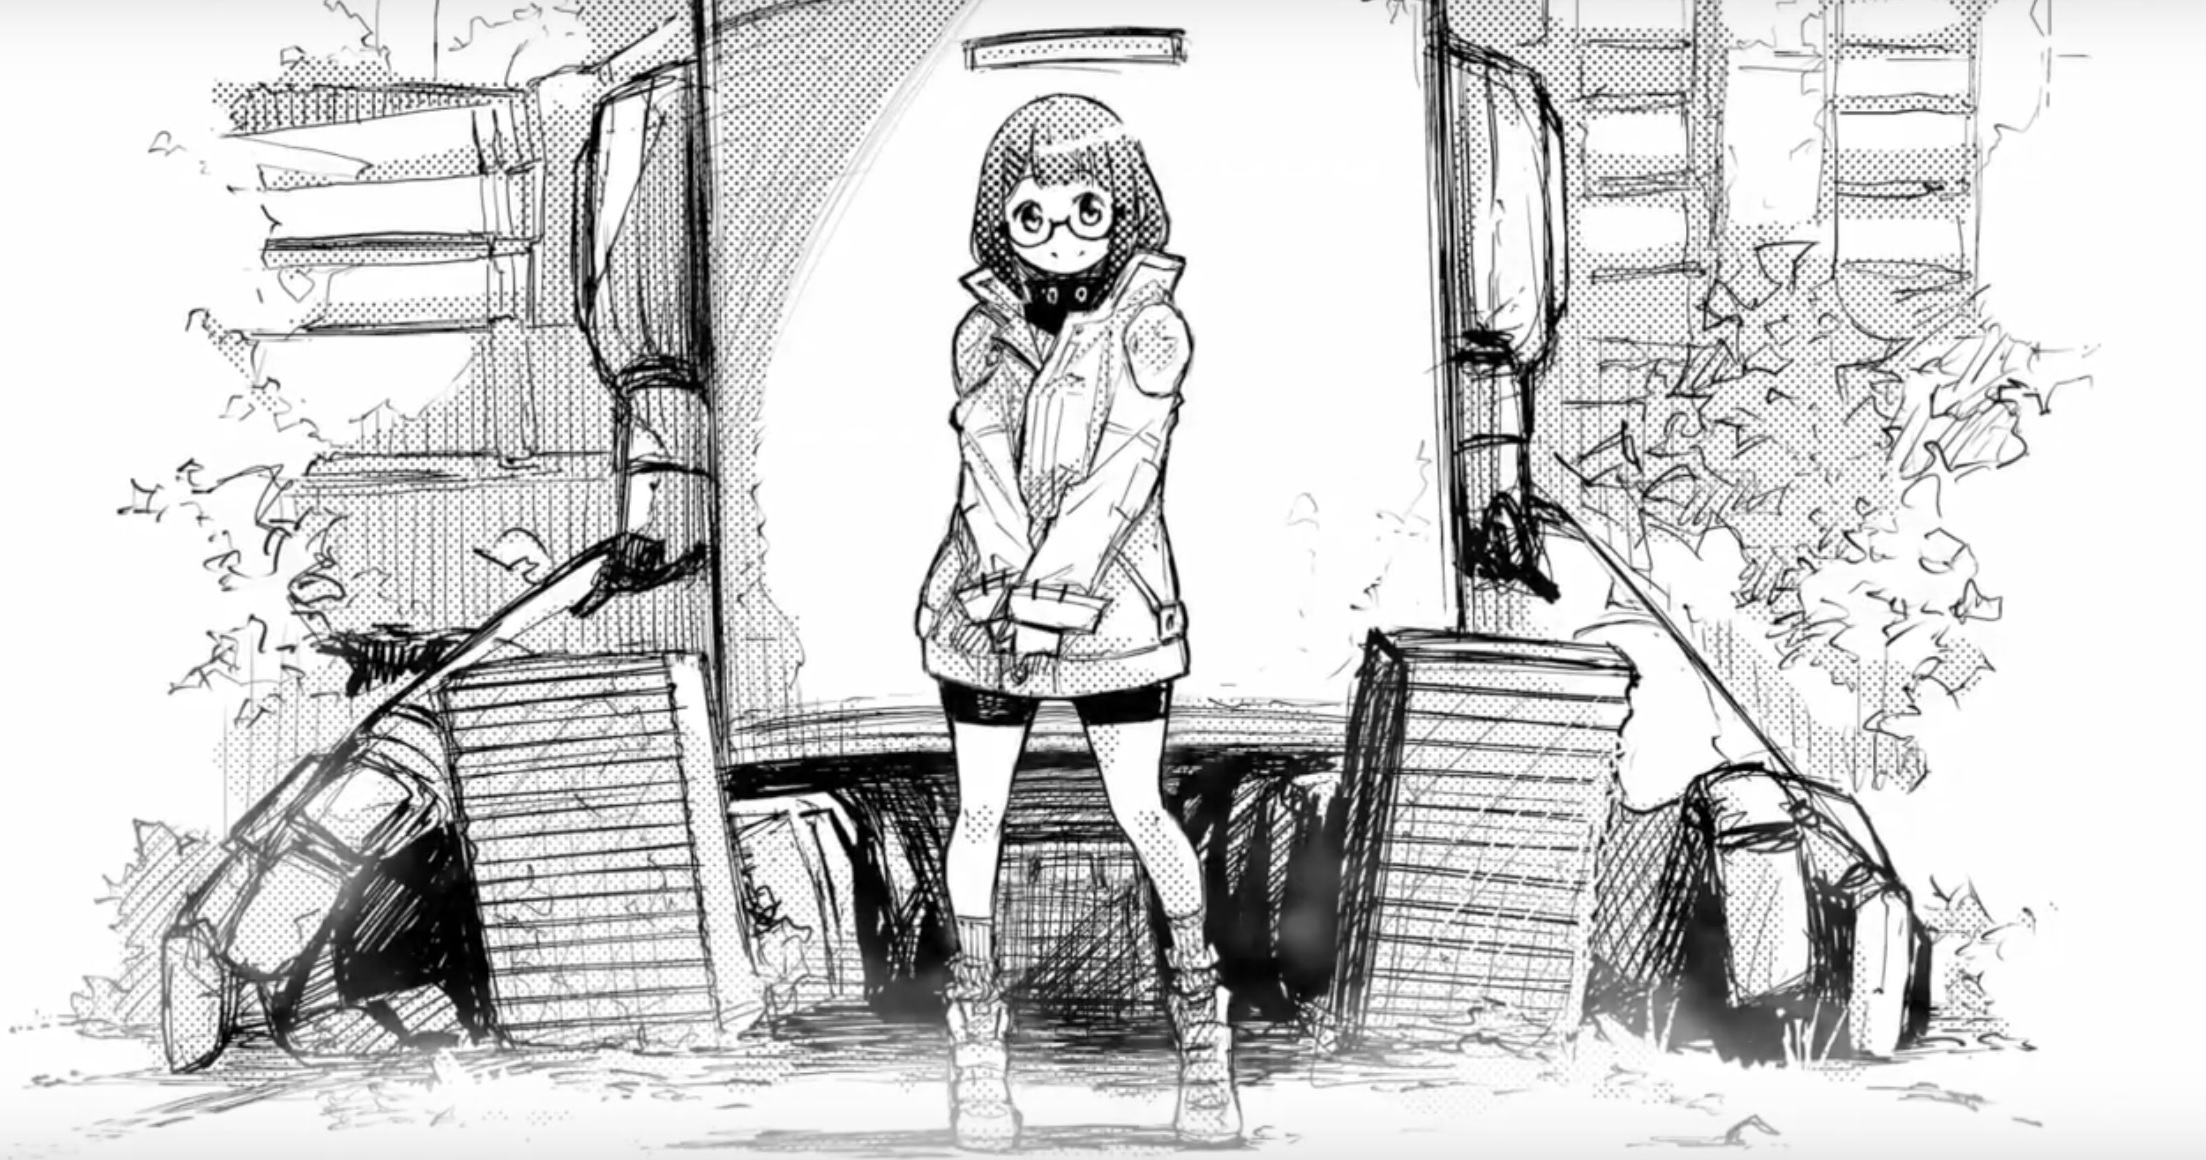 Avis Manga Ki-oon : Heart Gear - Tome 1 test blog manga lageekroom